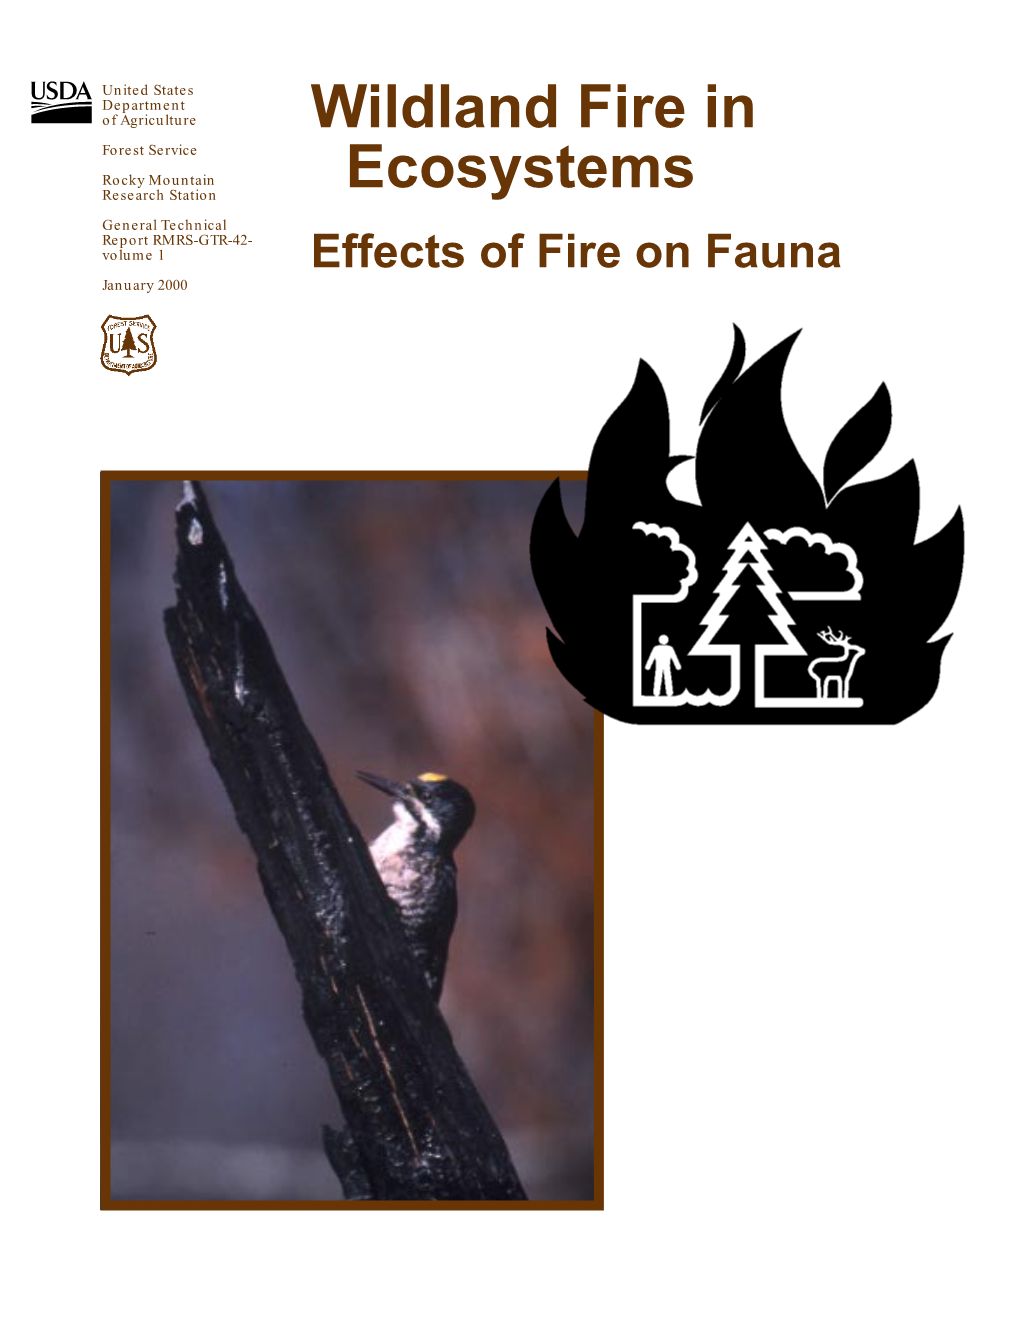 Smith, J.K., Ed. 2000. Wildland Fire in Ecosystems